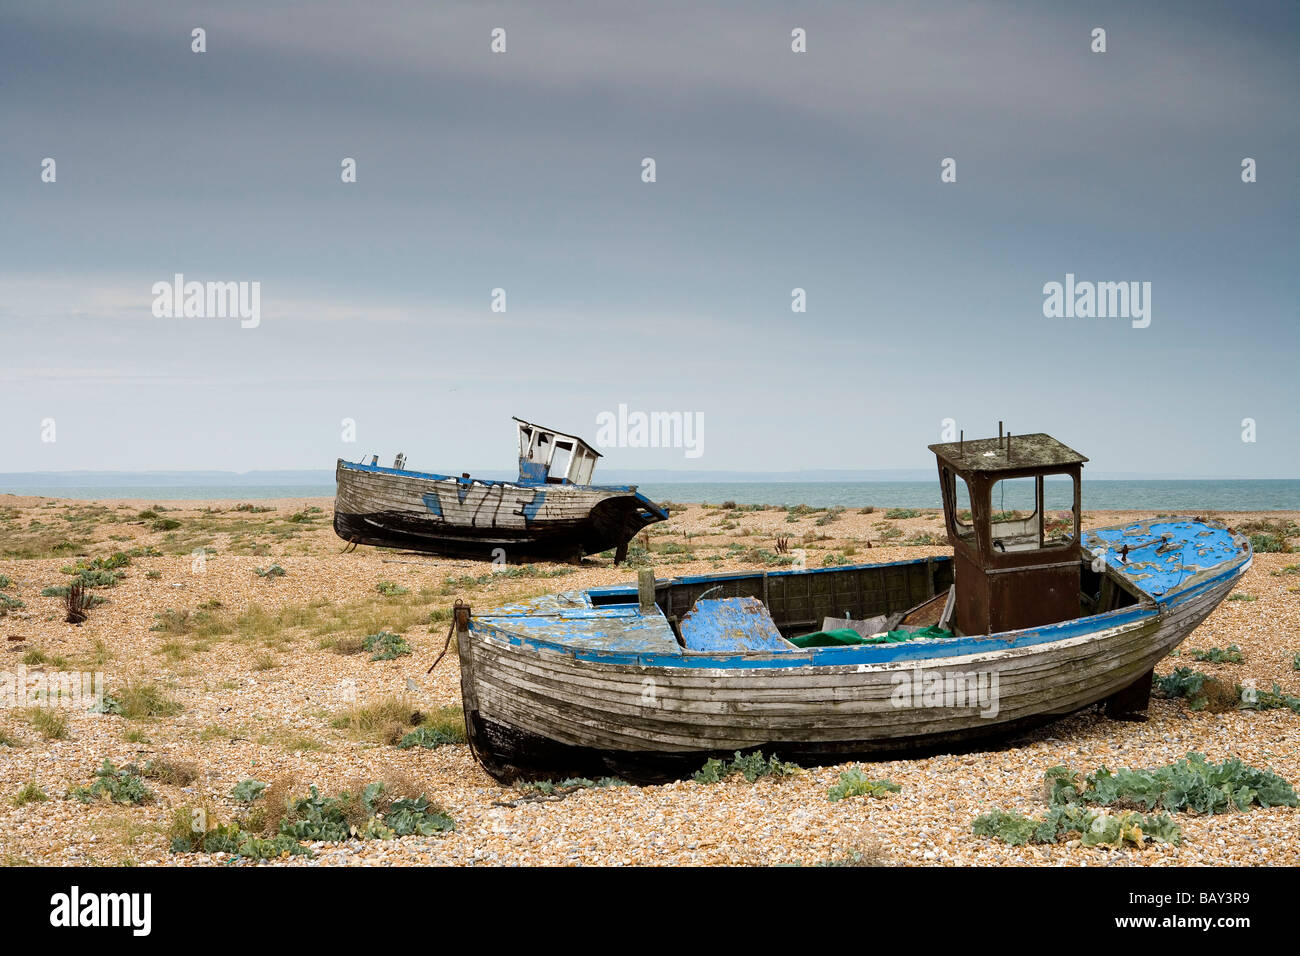 Épave abandonnée sur la plage, Dungeness, Kent, Angleterre, Europe Banque D'Images